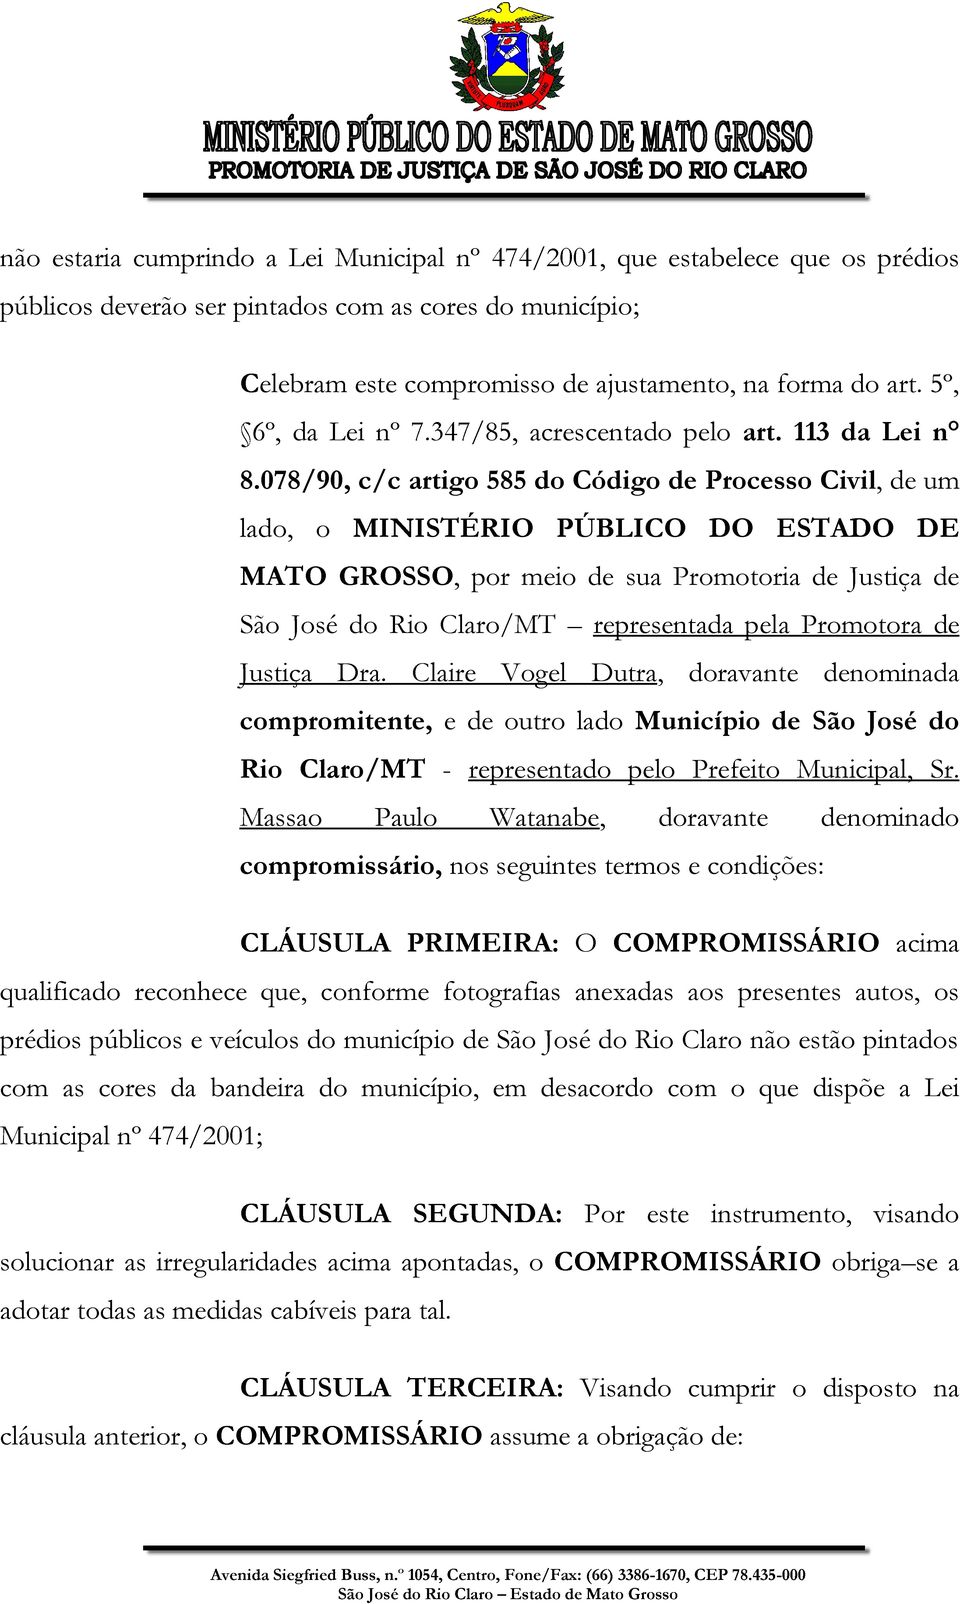 078/90, c/c artigo 585 do Código de Processo Civil, de um lado, o MINISTÉRIO PÚBLICO DO ESTADO DE MATO GROSSO, por meio de sua Promotoria de Justiça de São José do Rio Claro/MT representada pela